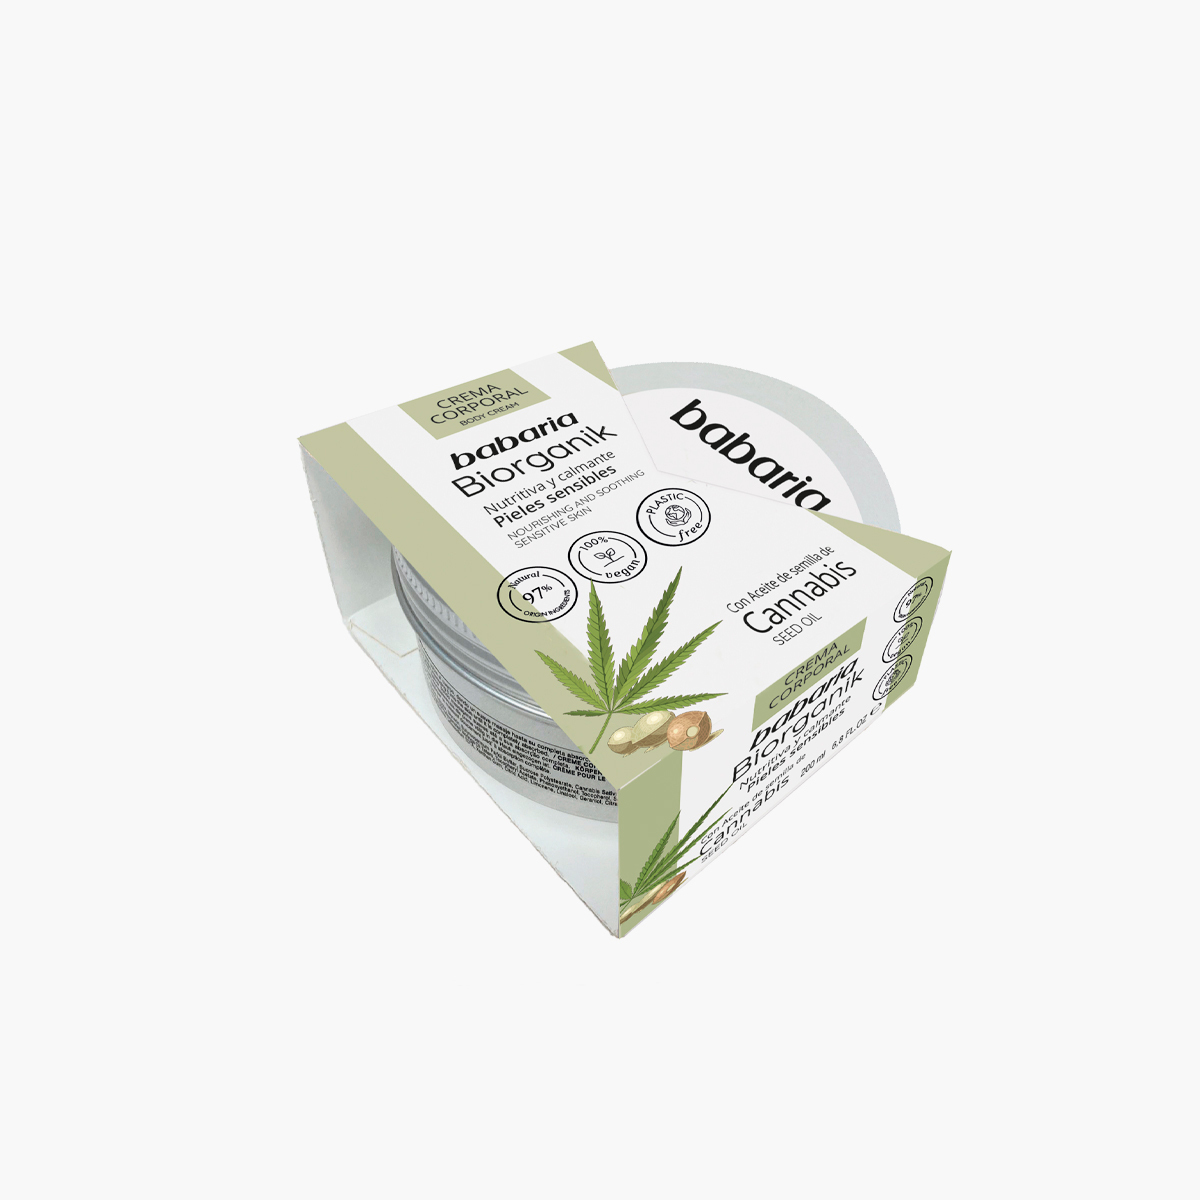 Cannabis Seed Oil Body Cream